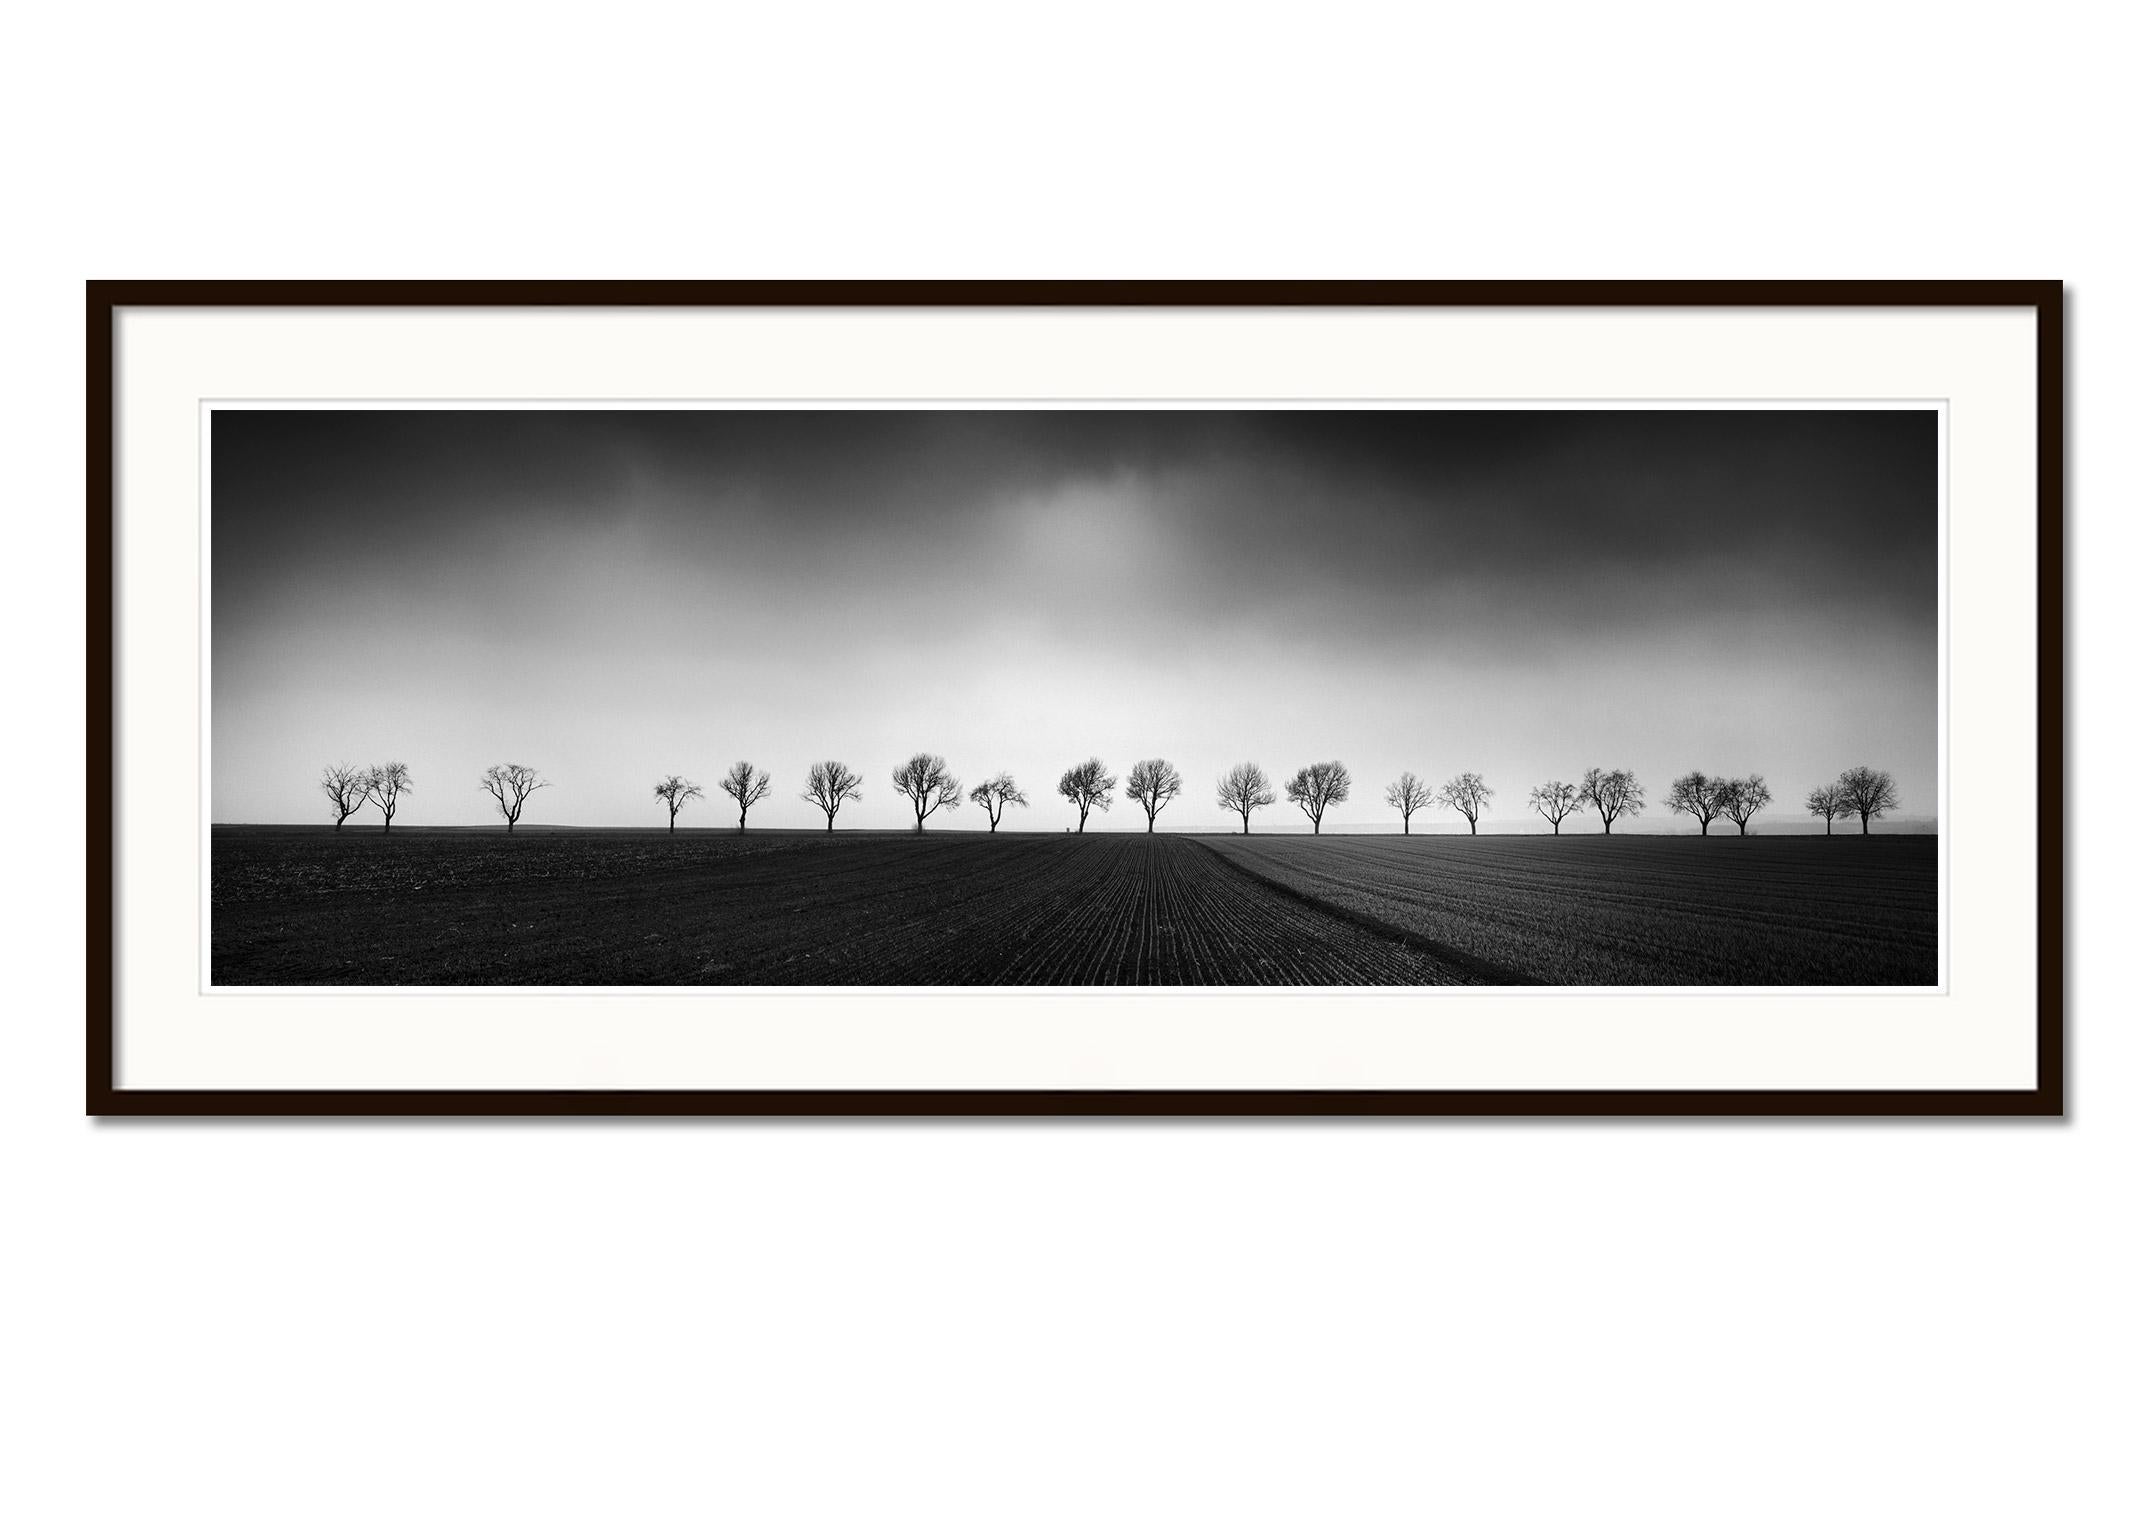 Zwanzig Kirschbaumbäume Avenue cornfield Schwarz-Schwarz-Weiß- Panoramen-Landschaftsfotografie (Grau), Black and White Photograph, von Gerald Berghammer